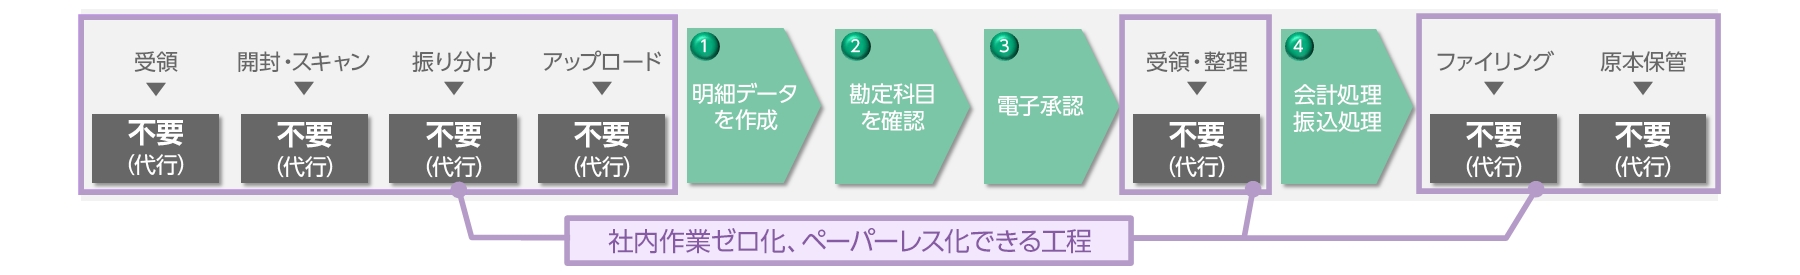 【After】TOKIUMインボイス（システムとBPOの垂直統合）